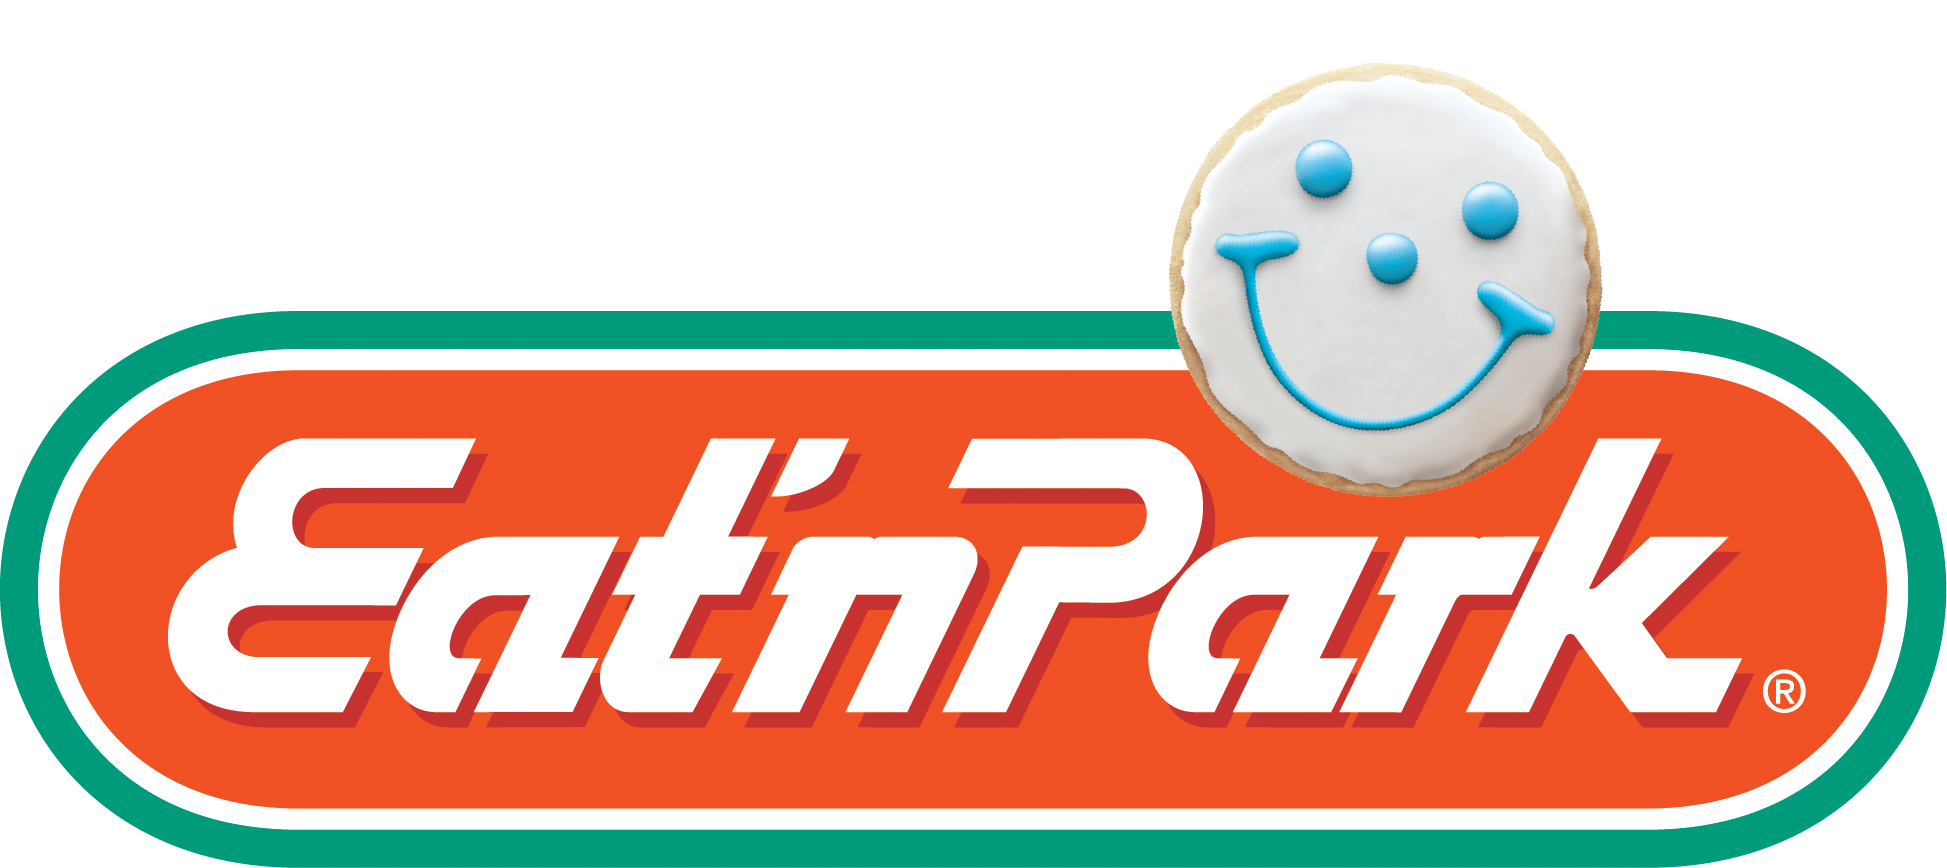 ENP Flat Pill 3D Smiley CMYK.png